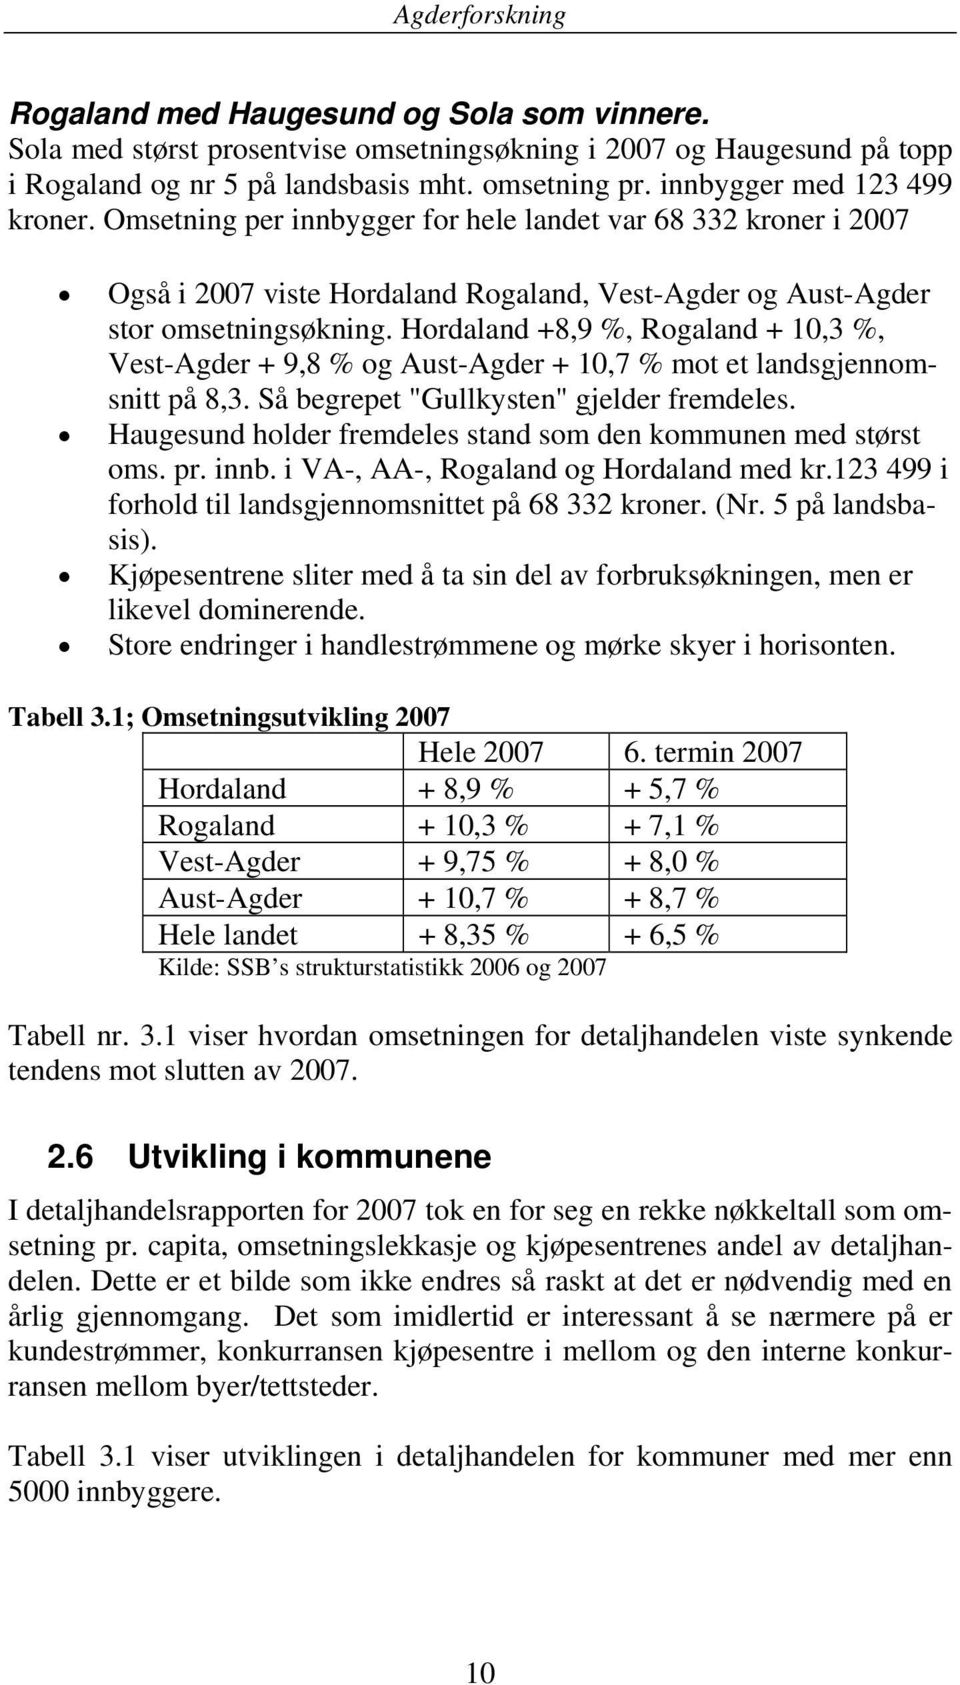 Hordaland +8,9 %, Rogaland + 10,3 %, Vest-Agder + 9,8 % og Aust-Agder + 10,7 % mot et landsgjennomsnitt på 8,3. Så begrepet "Gullkysten" gjelder fremdeles.